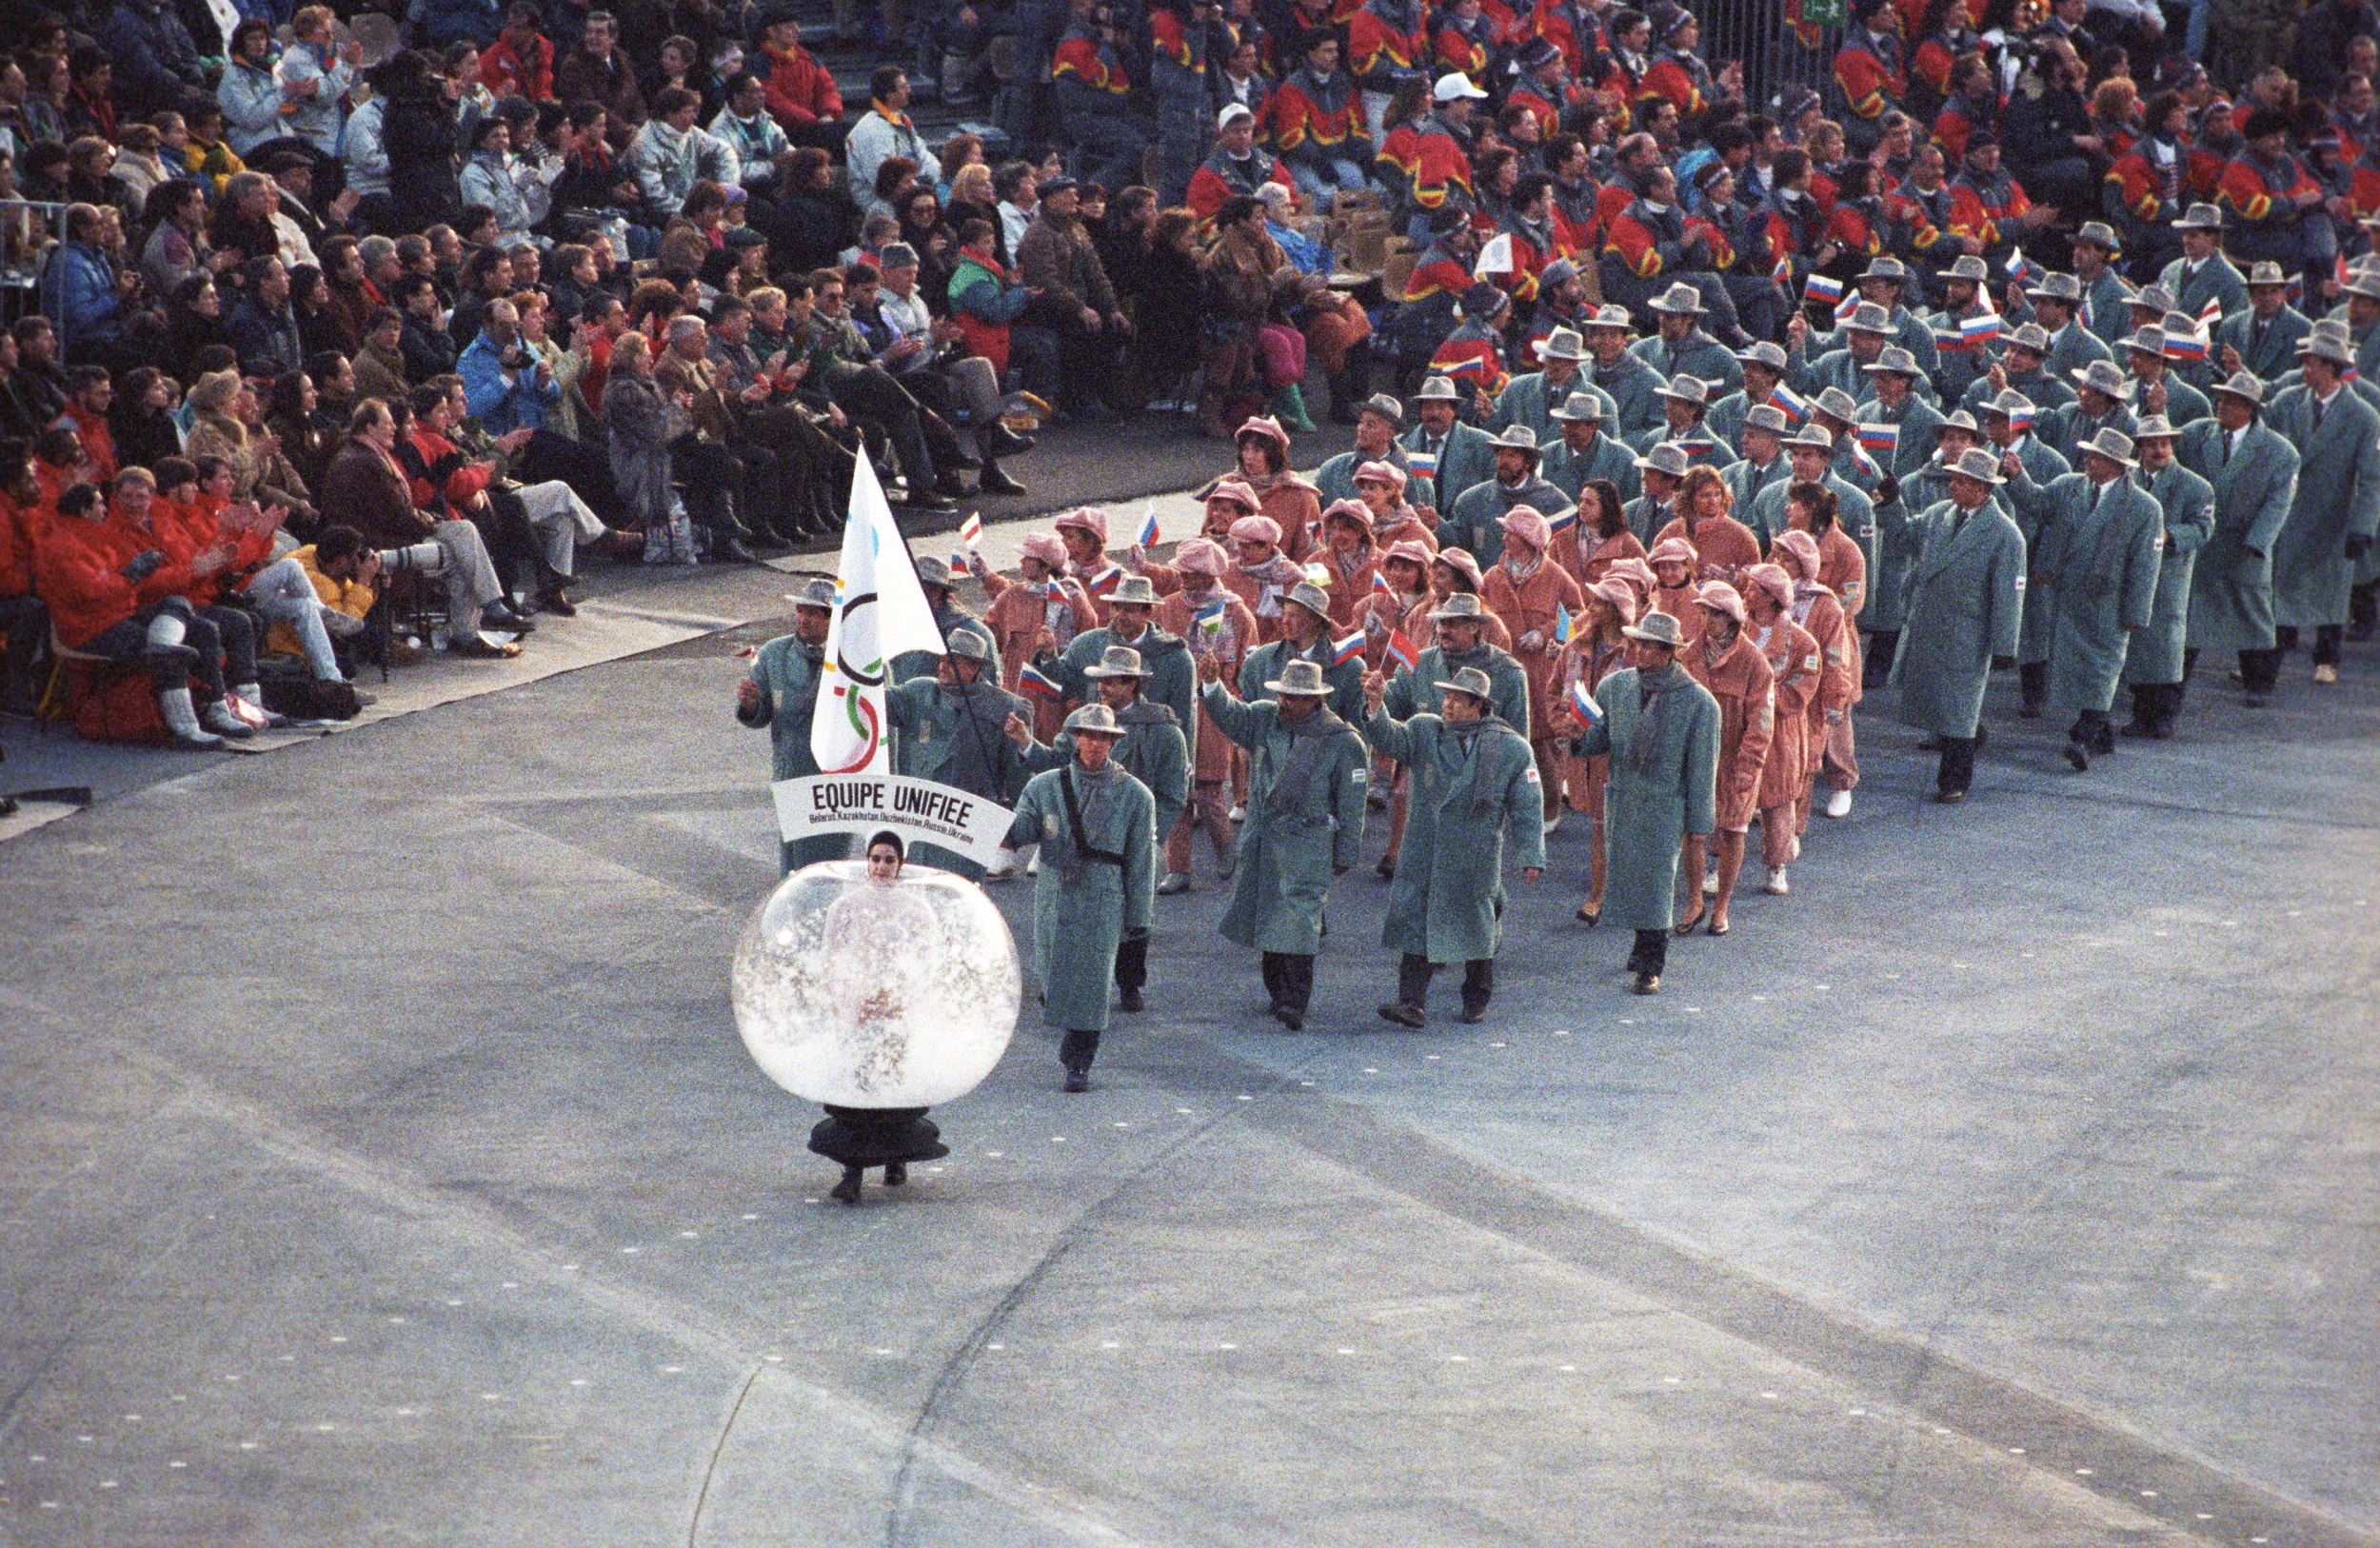 Объединенная команда спортсменов СНГ с олимпийским флагом на зимней Олимпиаде 1992 года в Альбервиле.